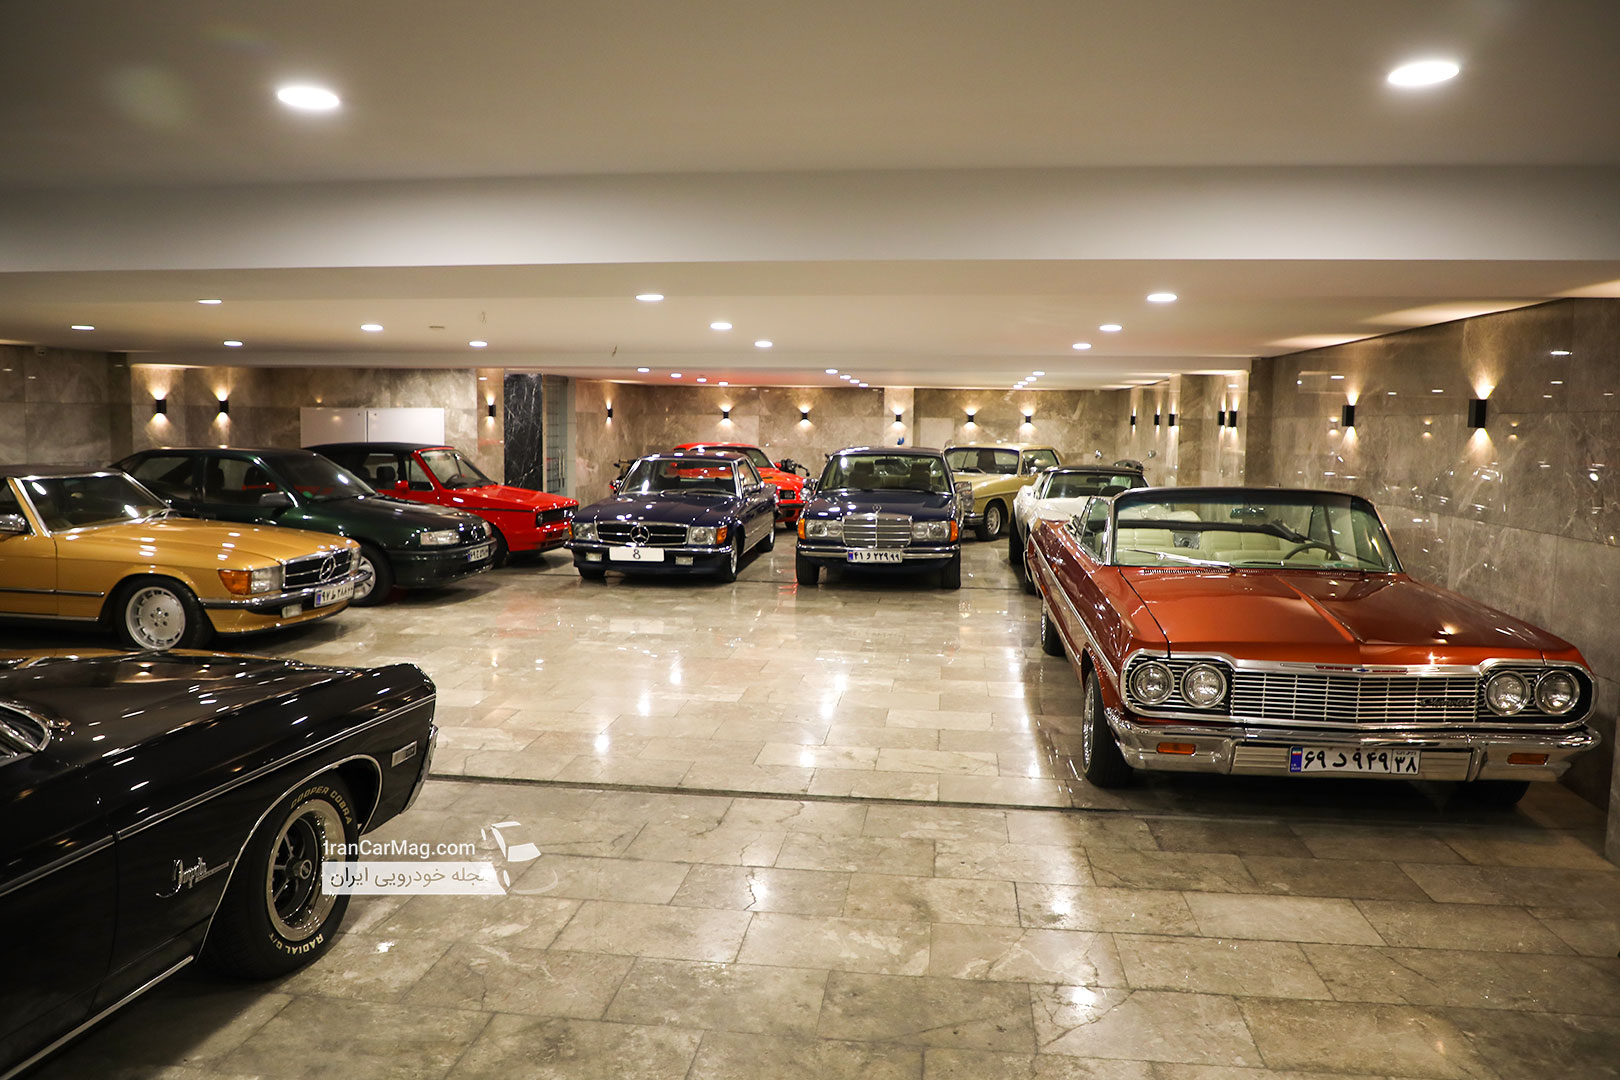  افتتاح گالری هشت، بهشت موتور و خودروهای کلاسیک + تصاویر اختصاصی و فیلم